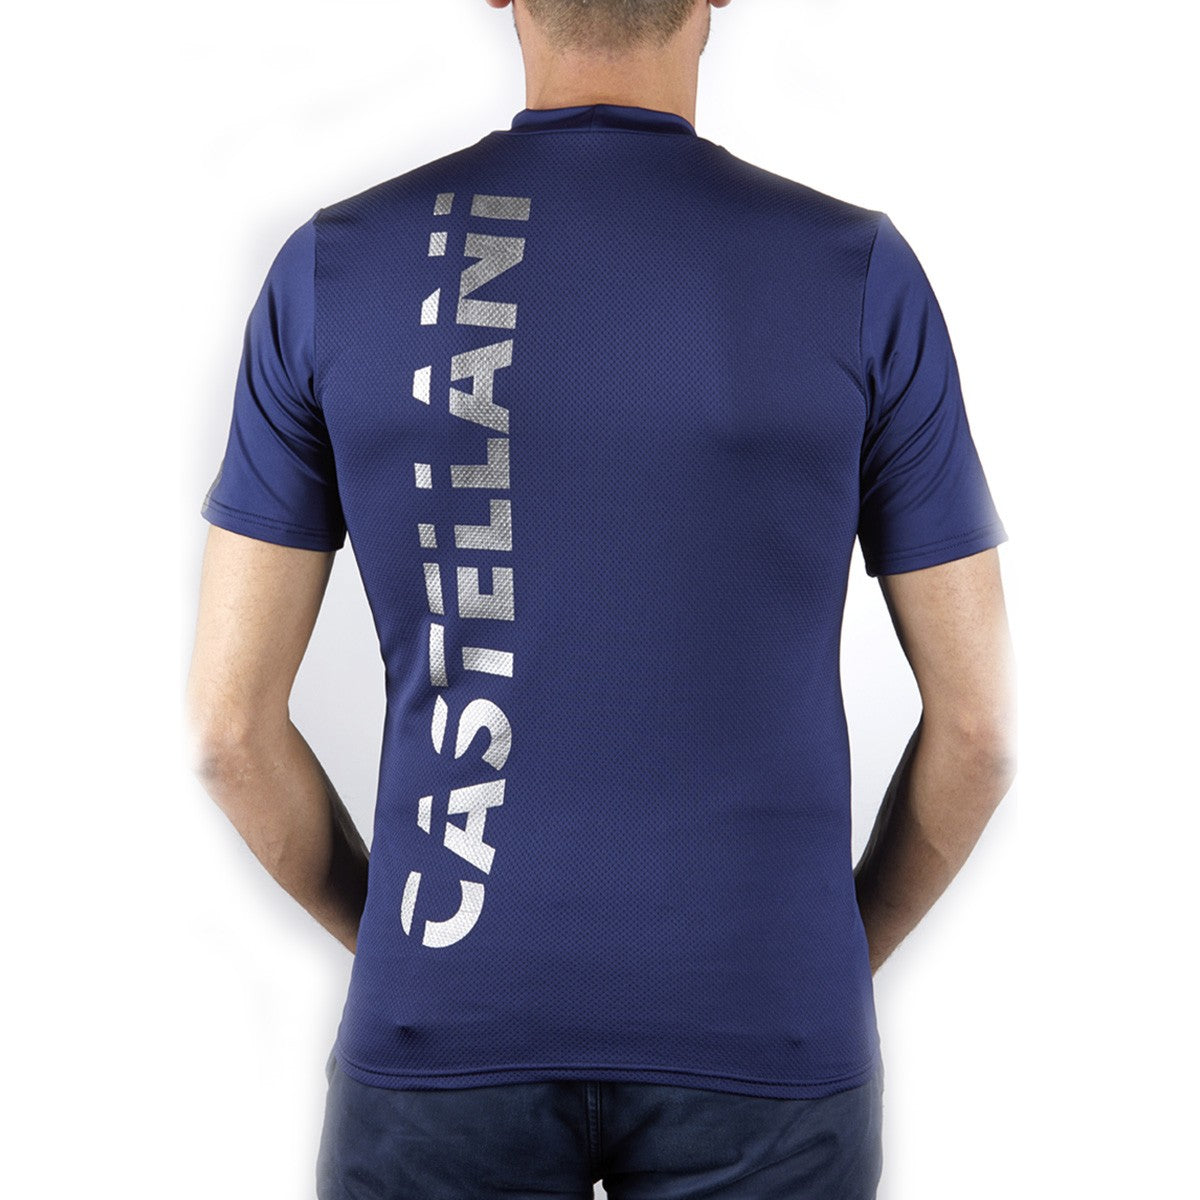 Camiseta Sport Castellani